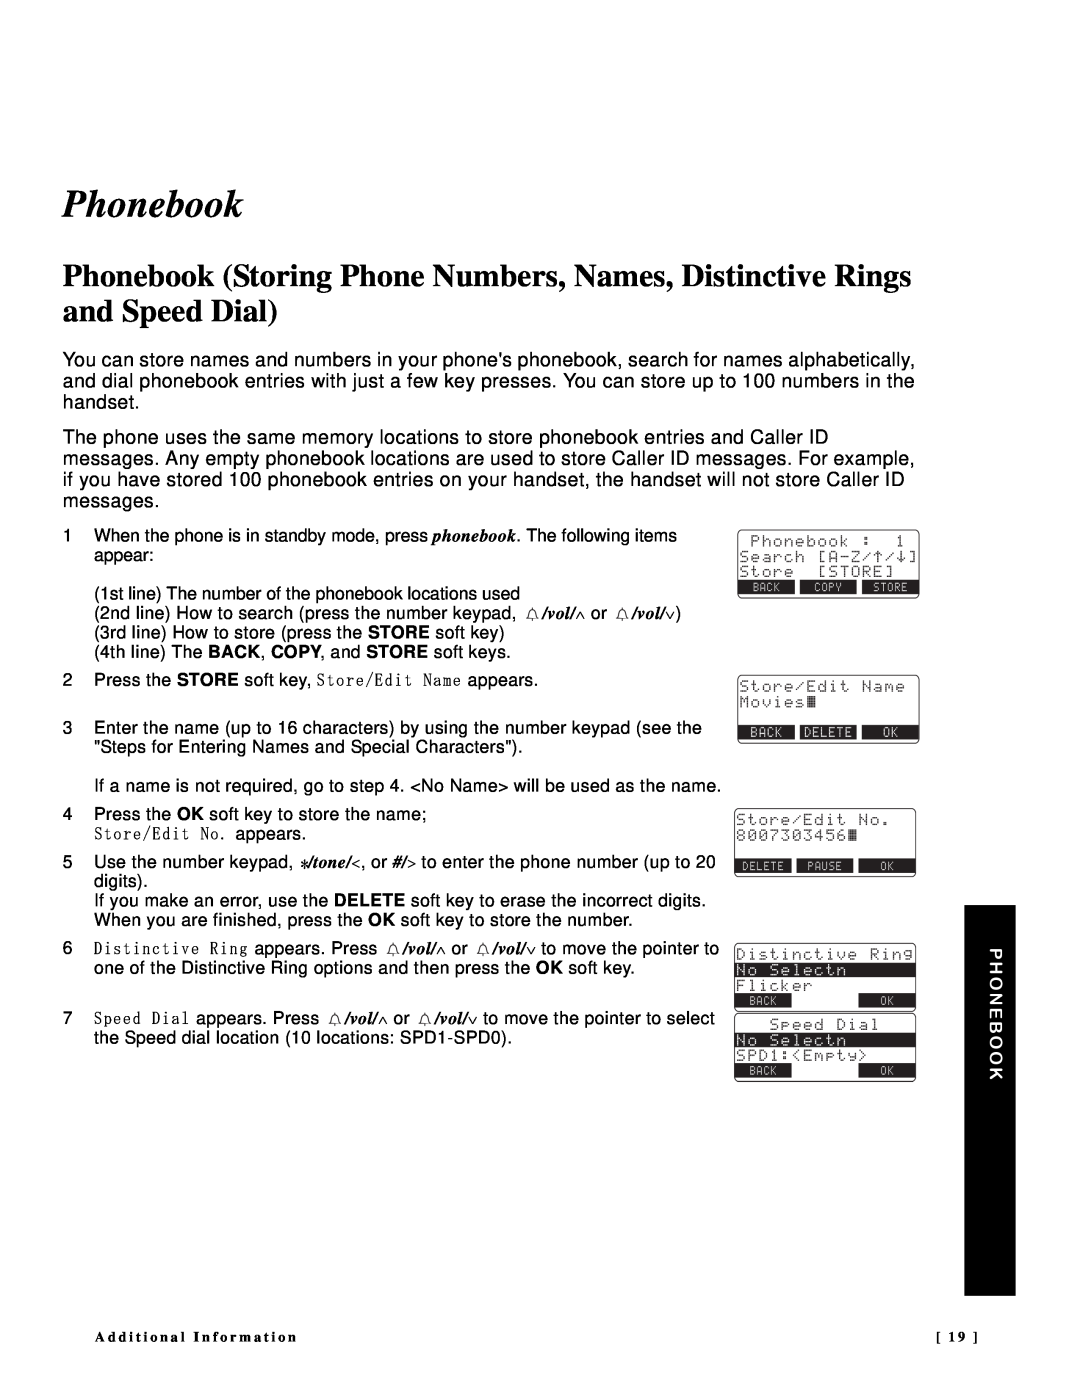 NEC DTR-IR-2 user manual Phonebook 